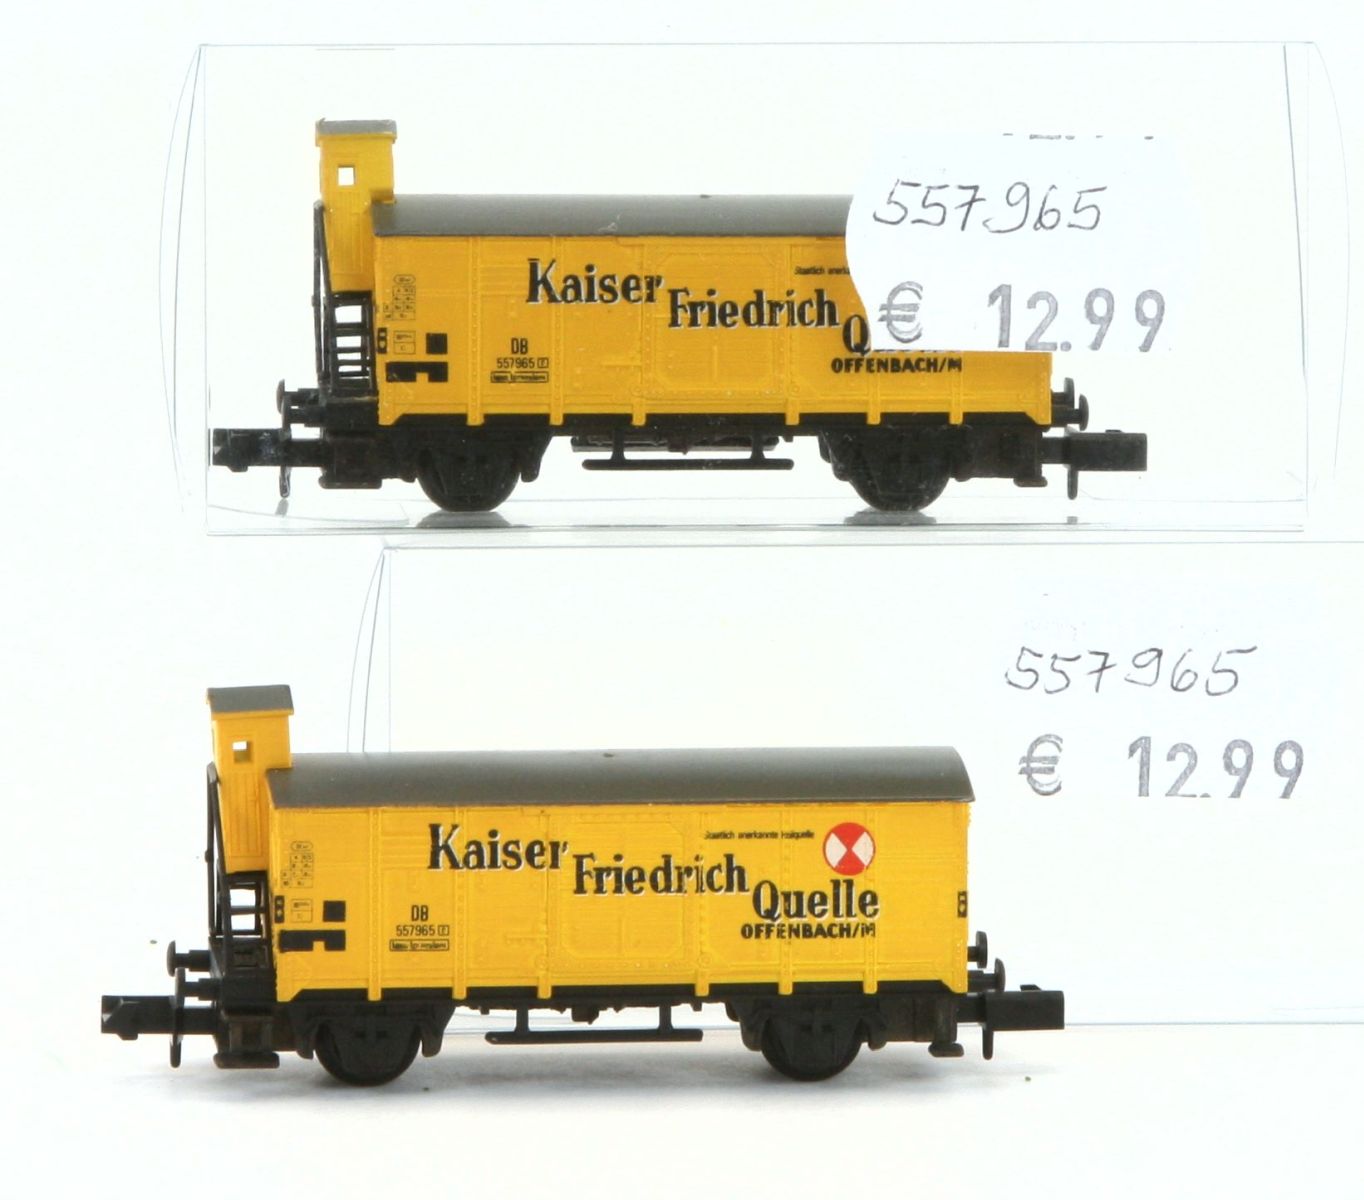 Arnold 557965-G - gedeckter Güterwagen mit Bremserhaus,DB, gelb